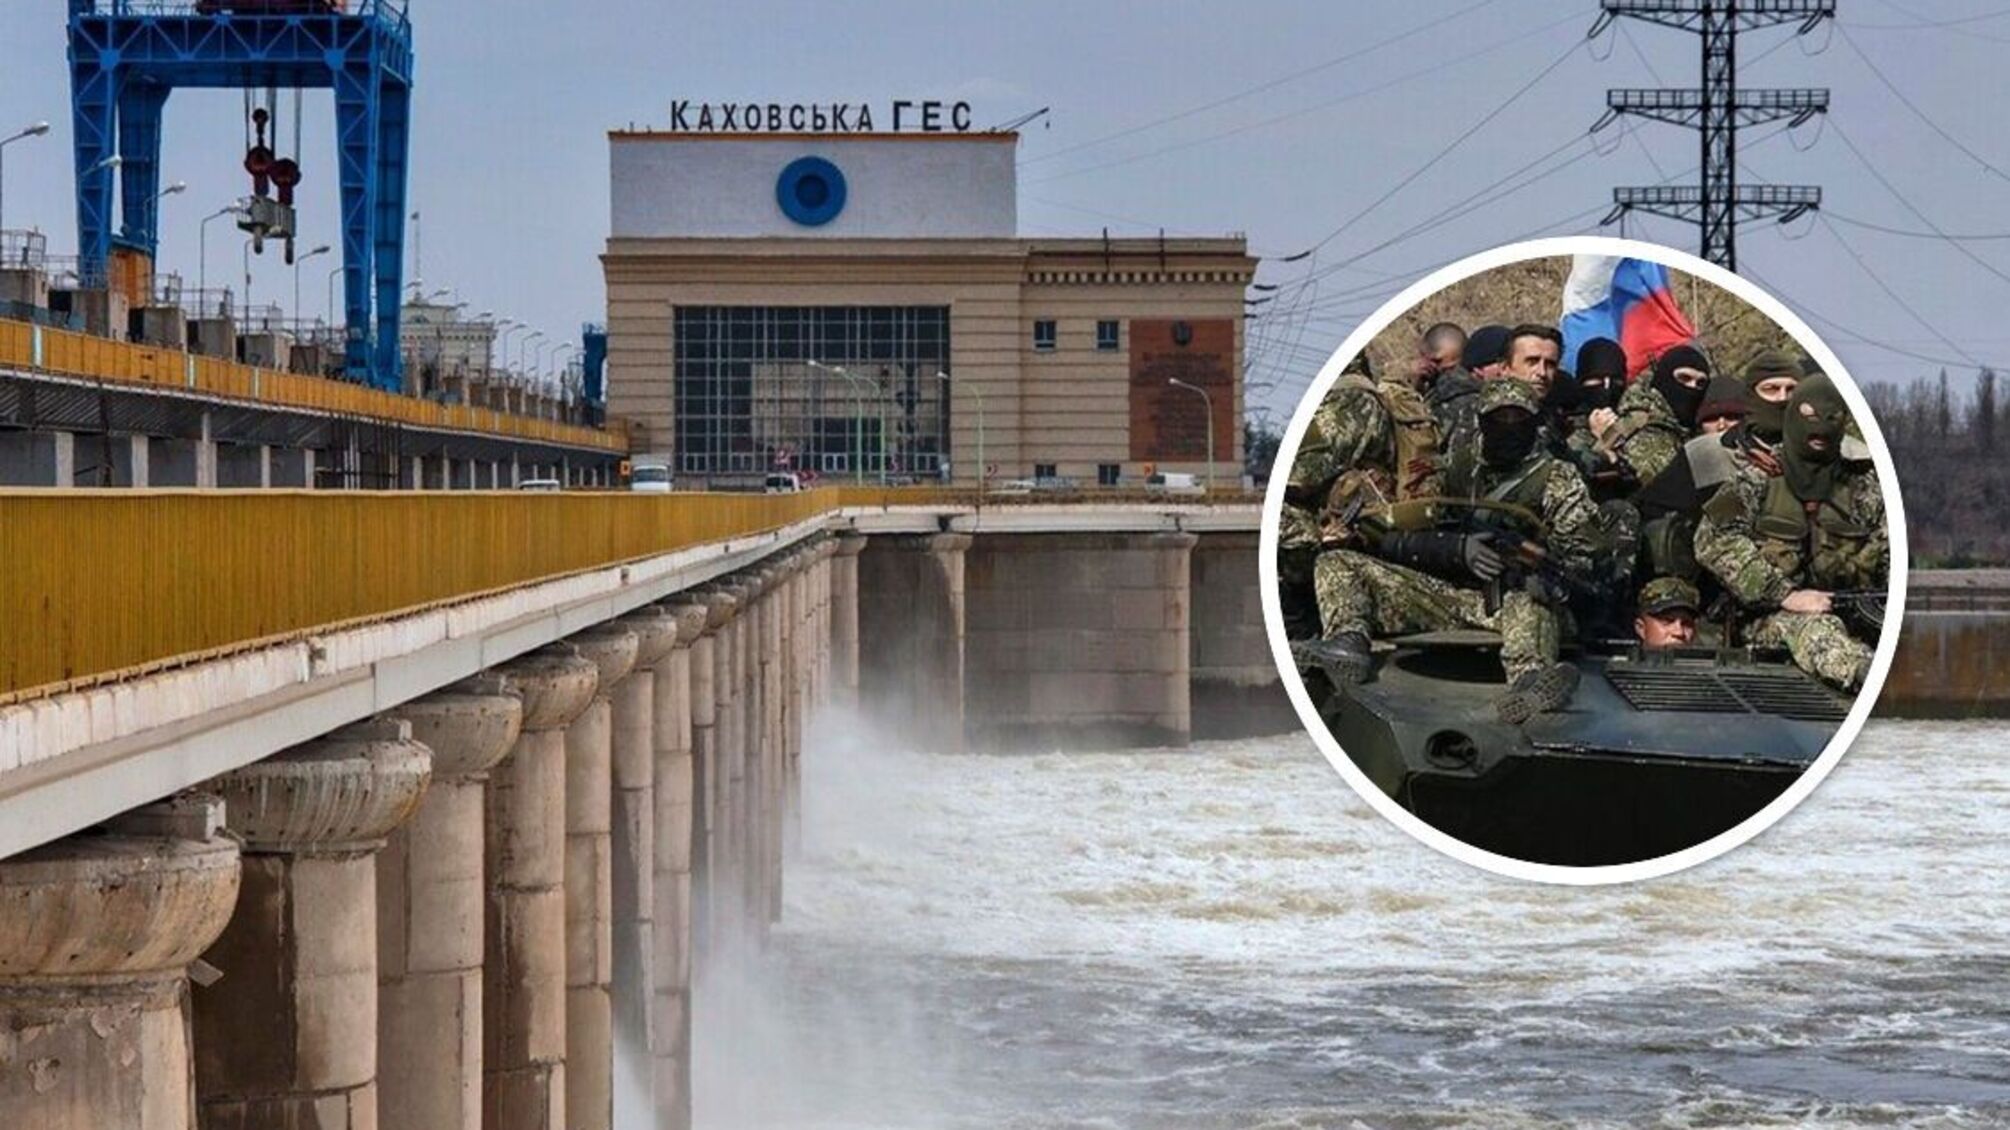 Каховская ГЭС: армия рф подорвет сооружение, затопит 88 населенных пунктов и обвинит ВСУ - ISW